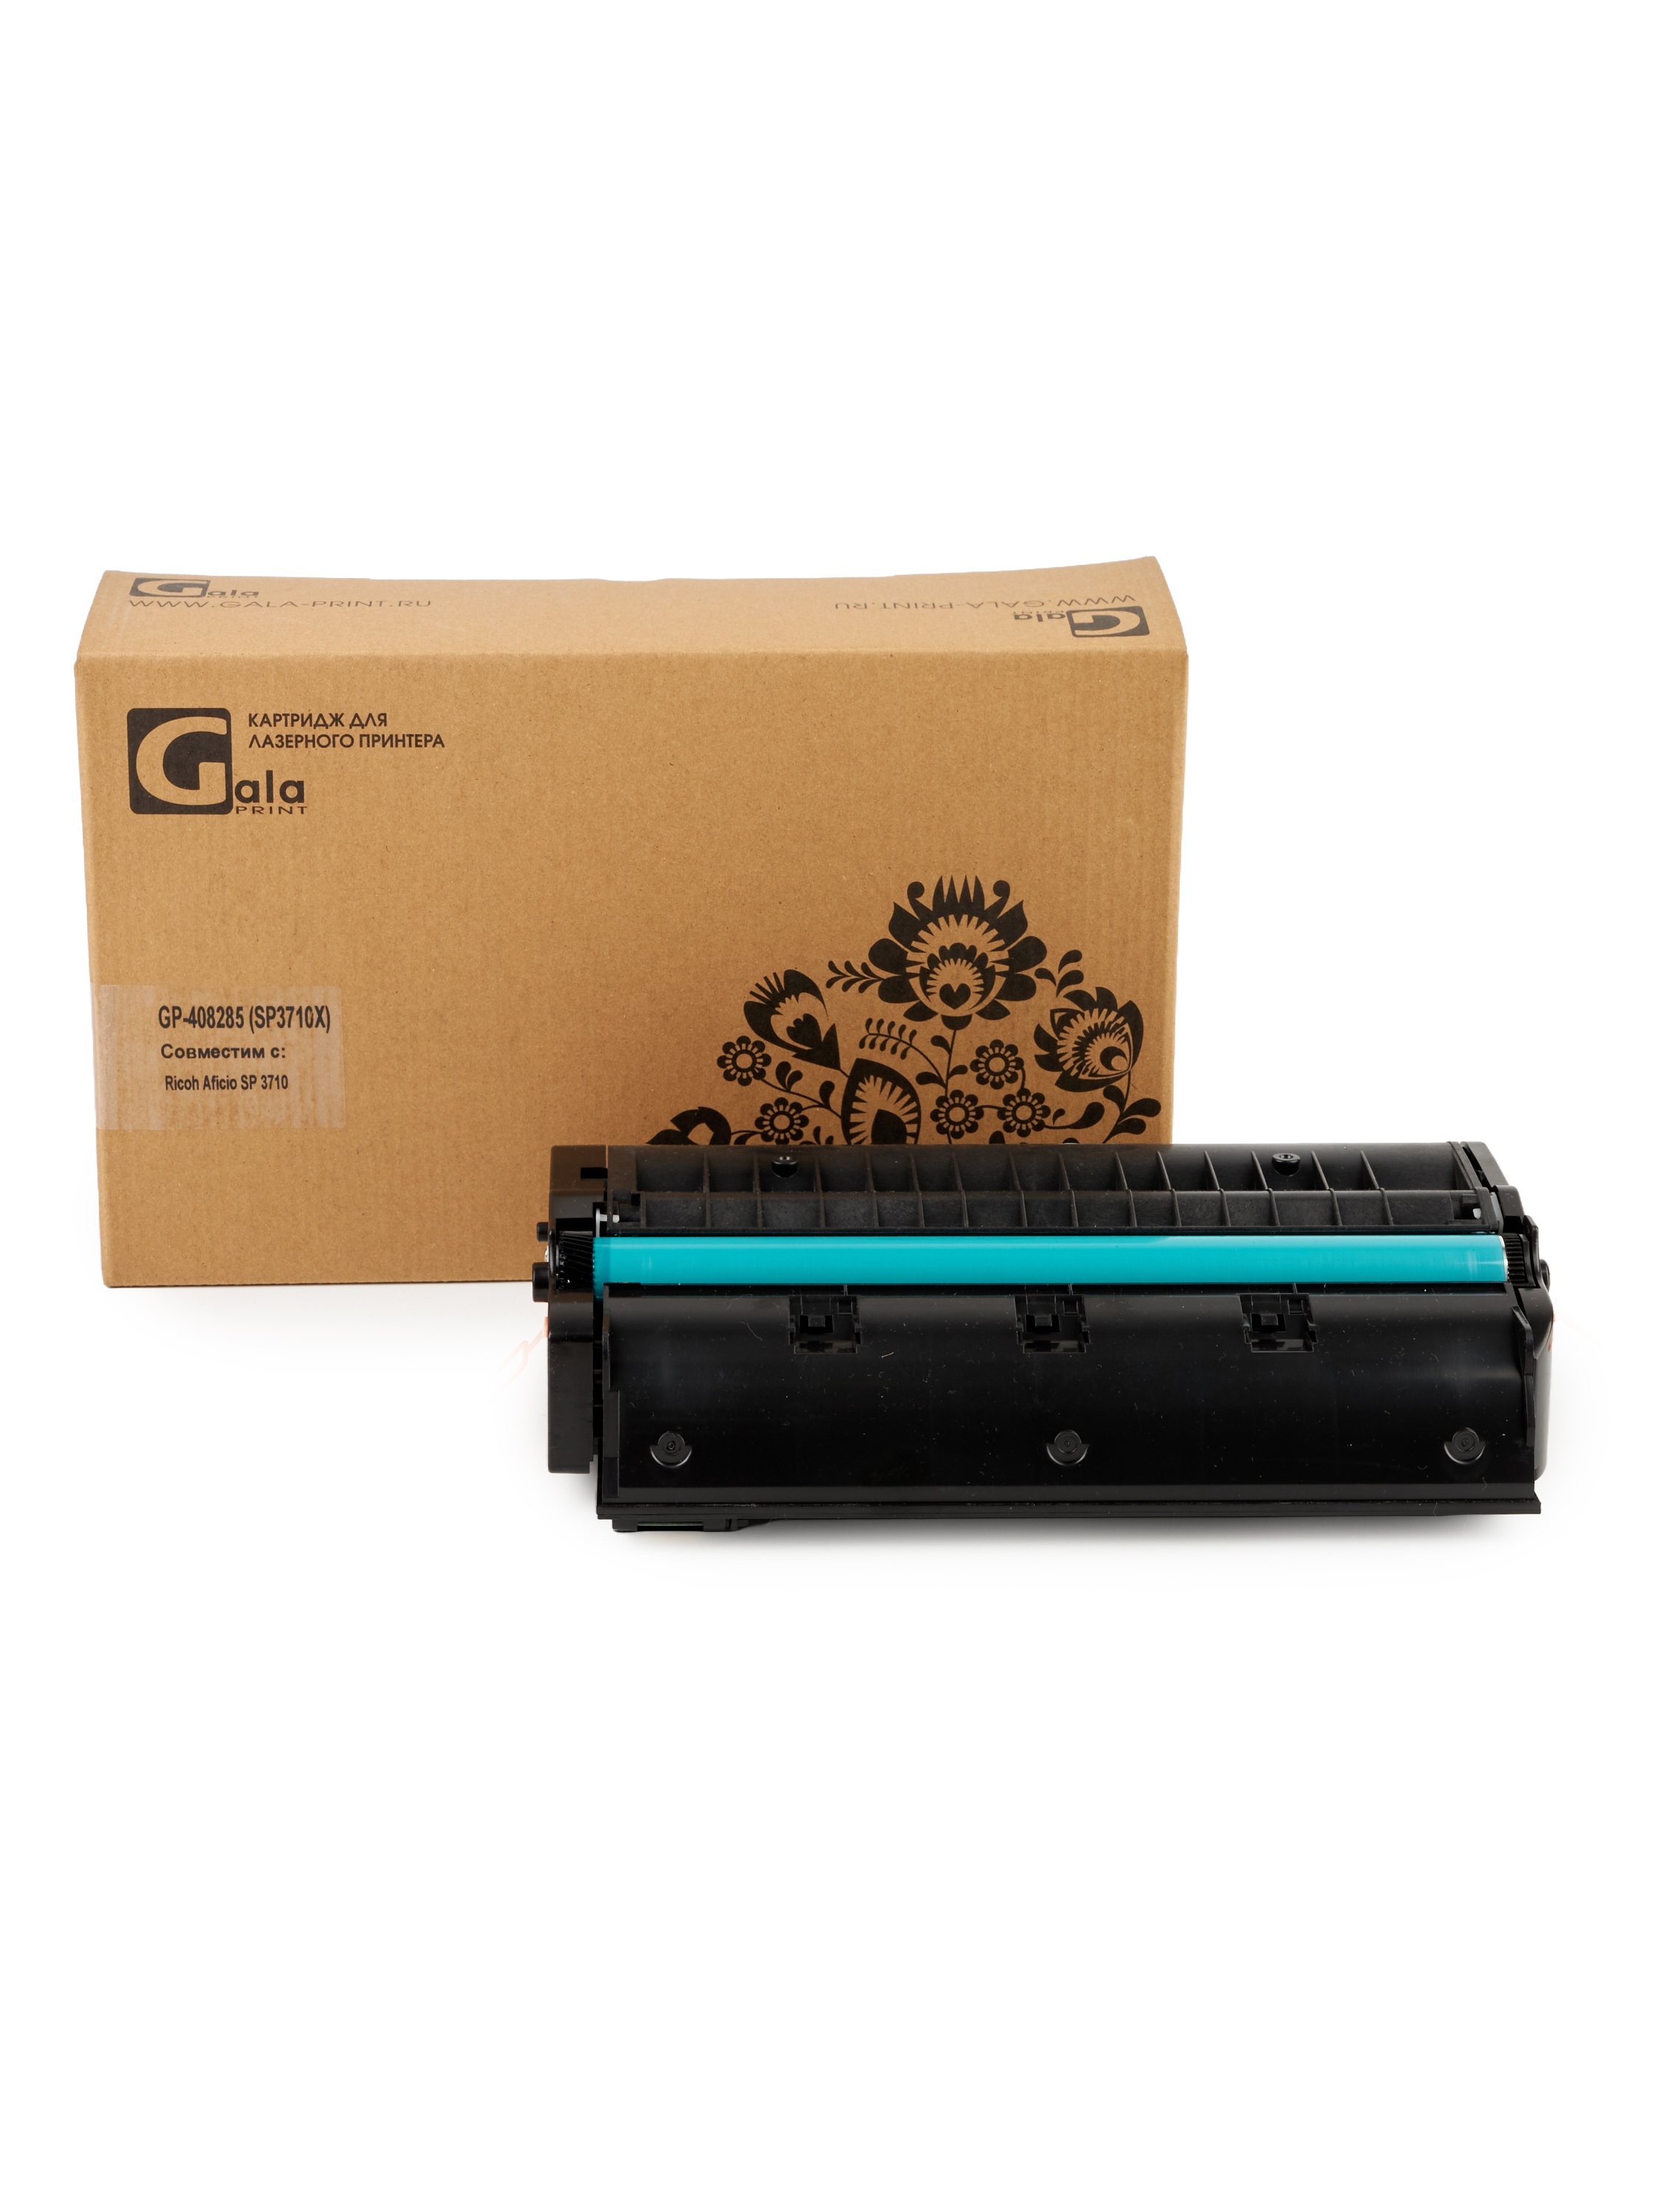 Принт-картридж GP-408285 (SP3710X) для принтеров Ricoh Aficio SP 3710 Black 7000 копий GalaPrint